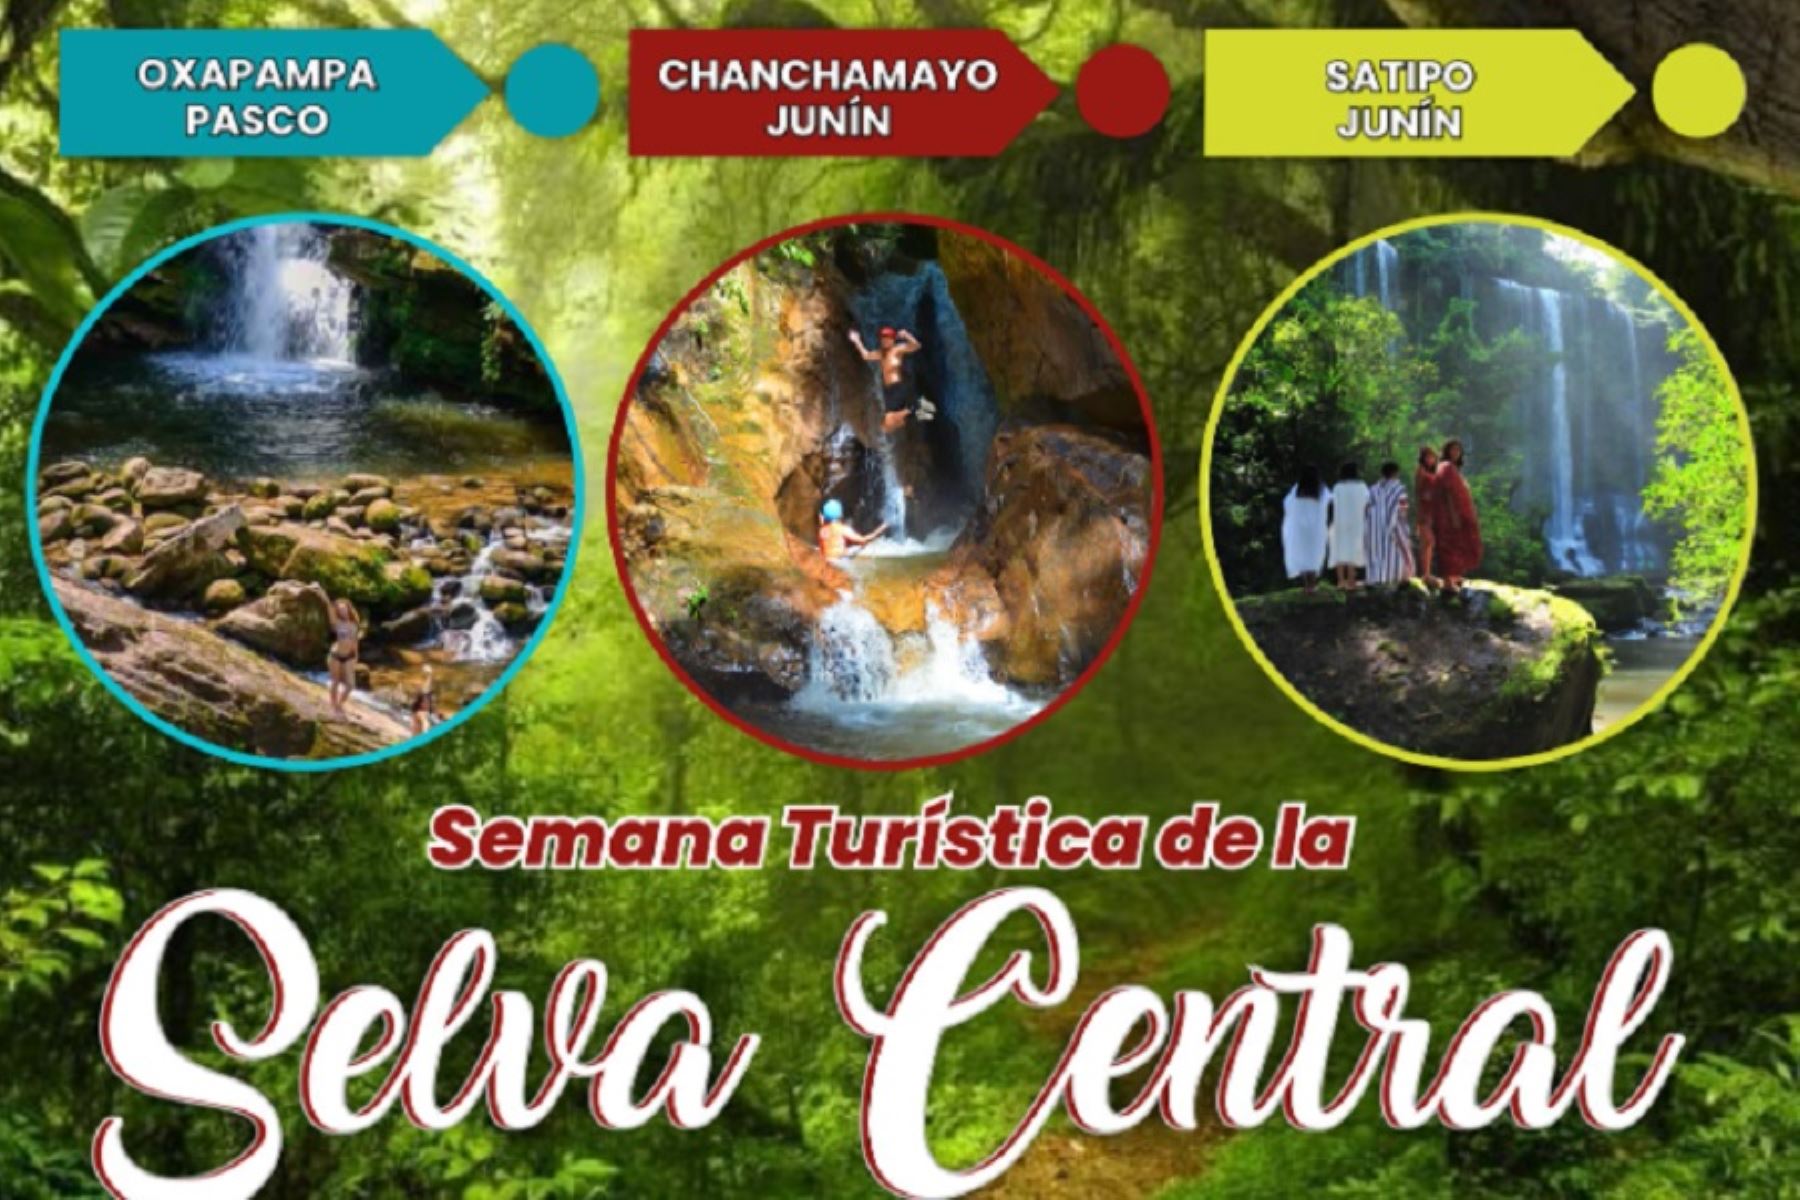 Semana Turística de Selva Central: disfruta del encanto de Chanchamayo, Satipo y Oxapampa